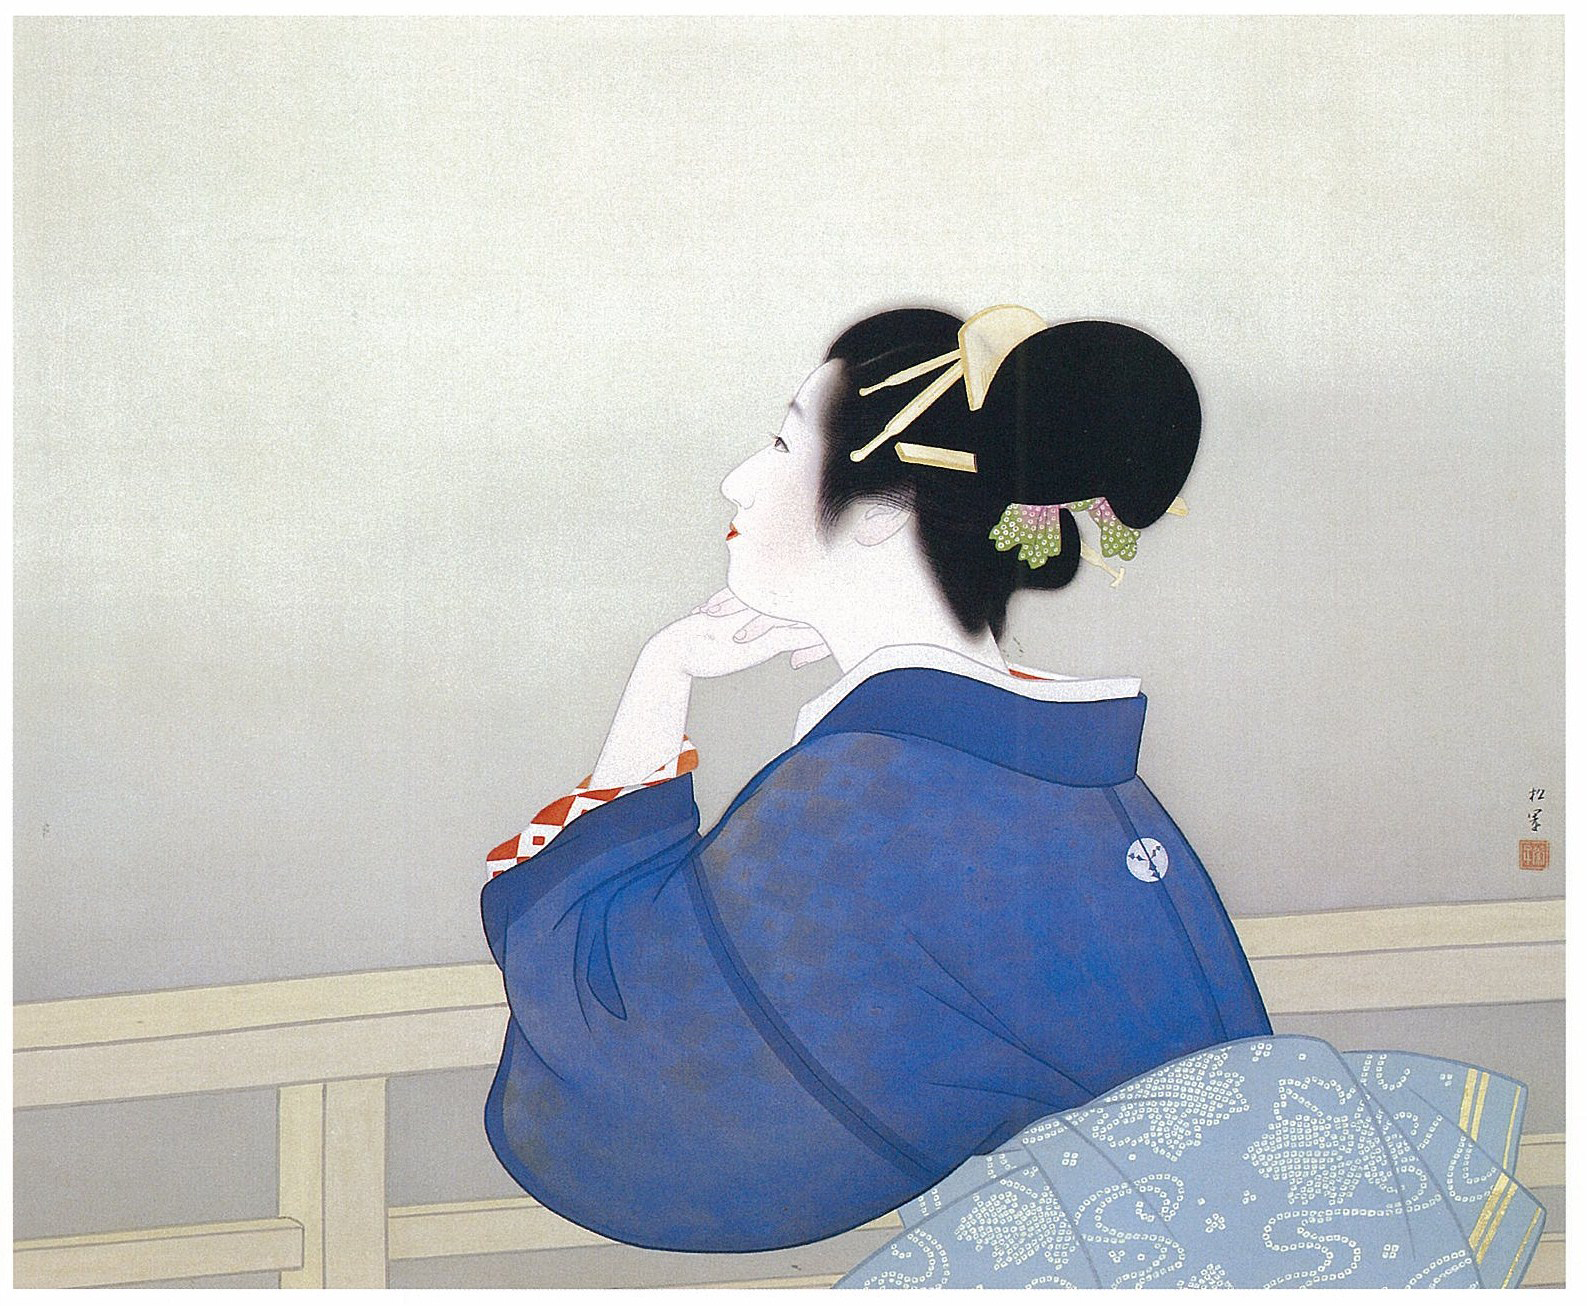 等月亮升起的女人 by Uemura Shōen - 1944 - 86 x 73 cm 